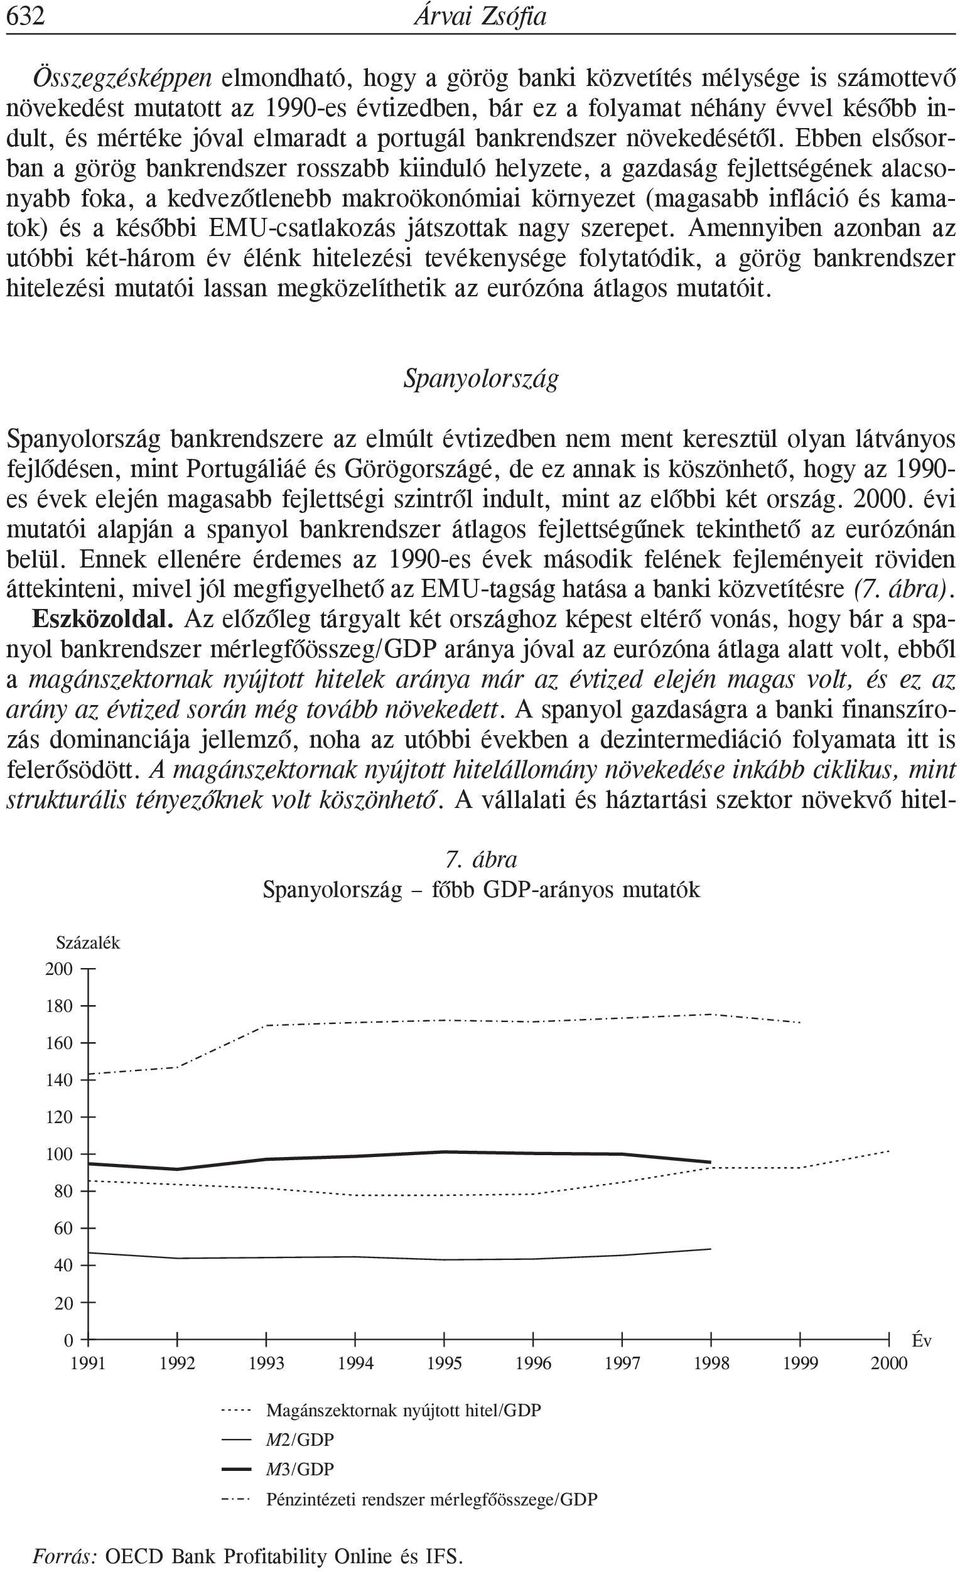 Ebben elsõsorban a görög bankrendszer rosszabb kiinduló helyzete, a gazdaság fejlettségének alacsonyabb foka, a kedvezõtlenebb makroökonómiai környezet (magasabb infláció és kamatok) és a késõbbi